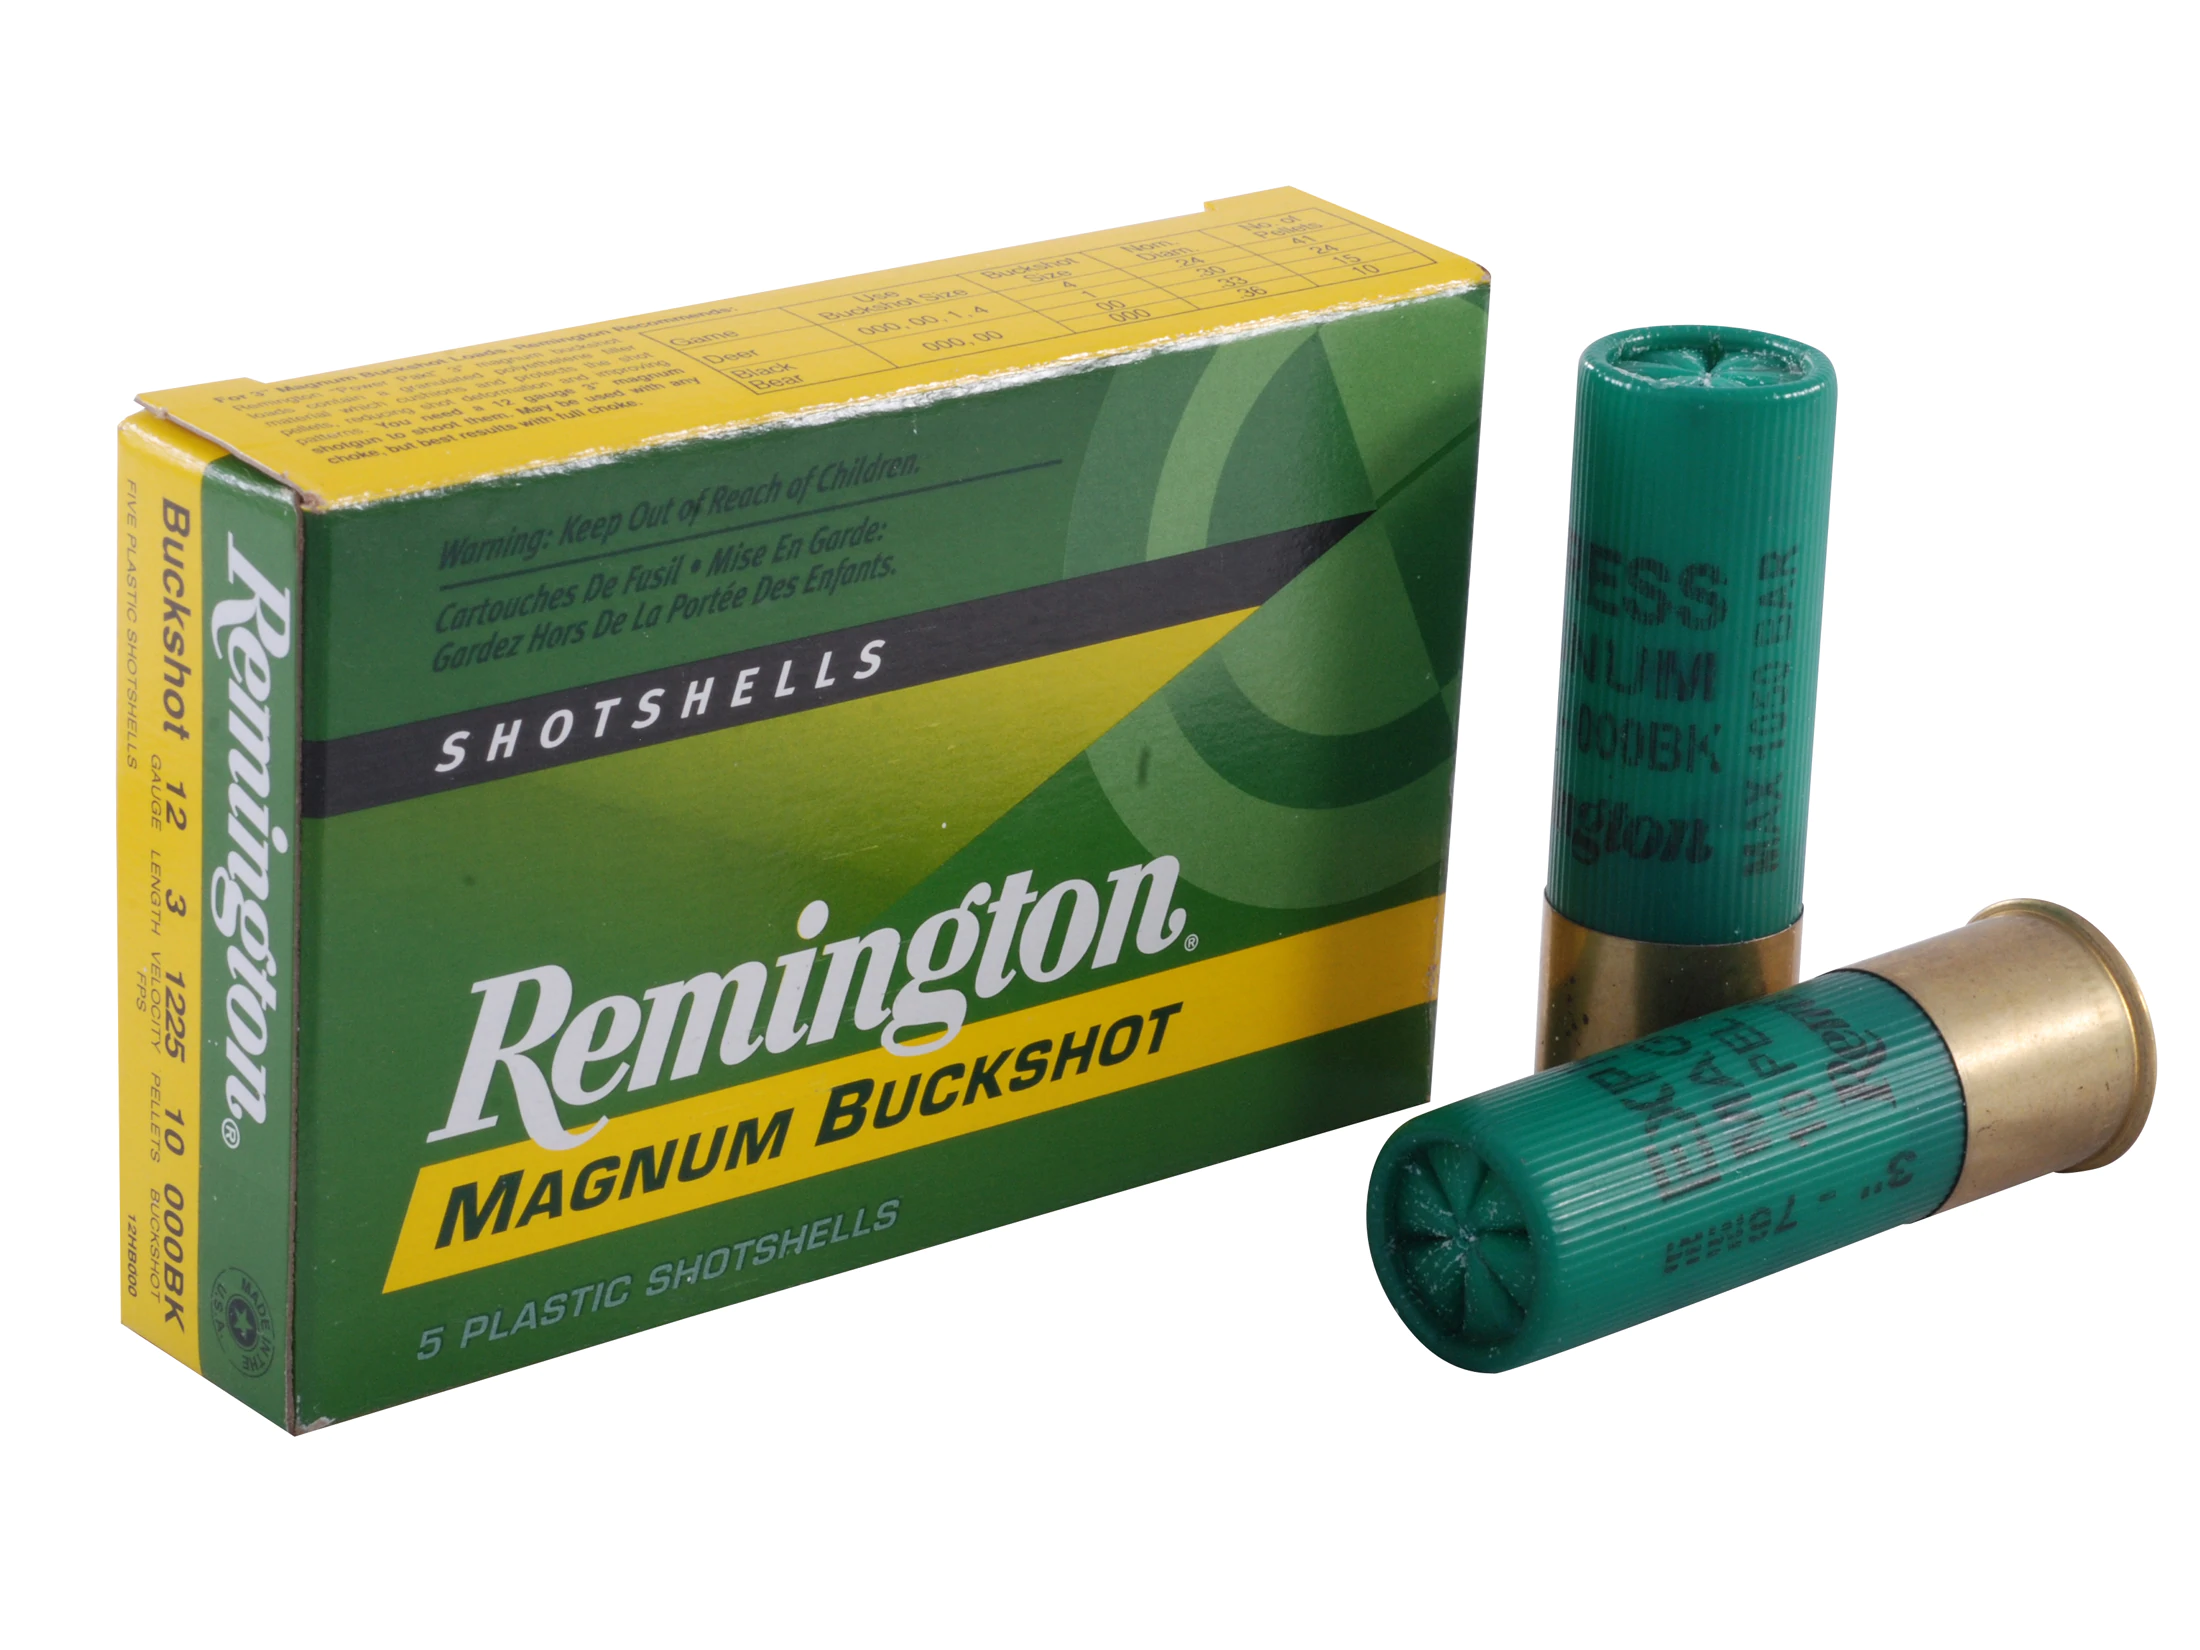 Image of Remington Express Magnum Buckshot Shotgun Ammo 12 ga 3" 4 dr 10 plts #000 1225 fps - 5/box